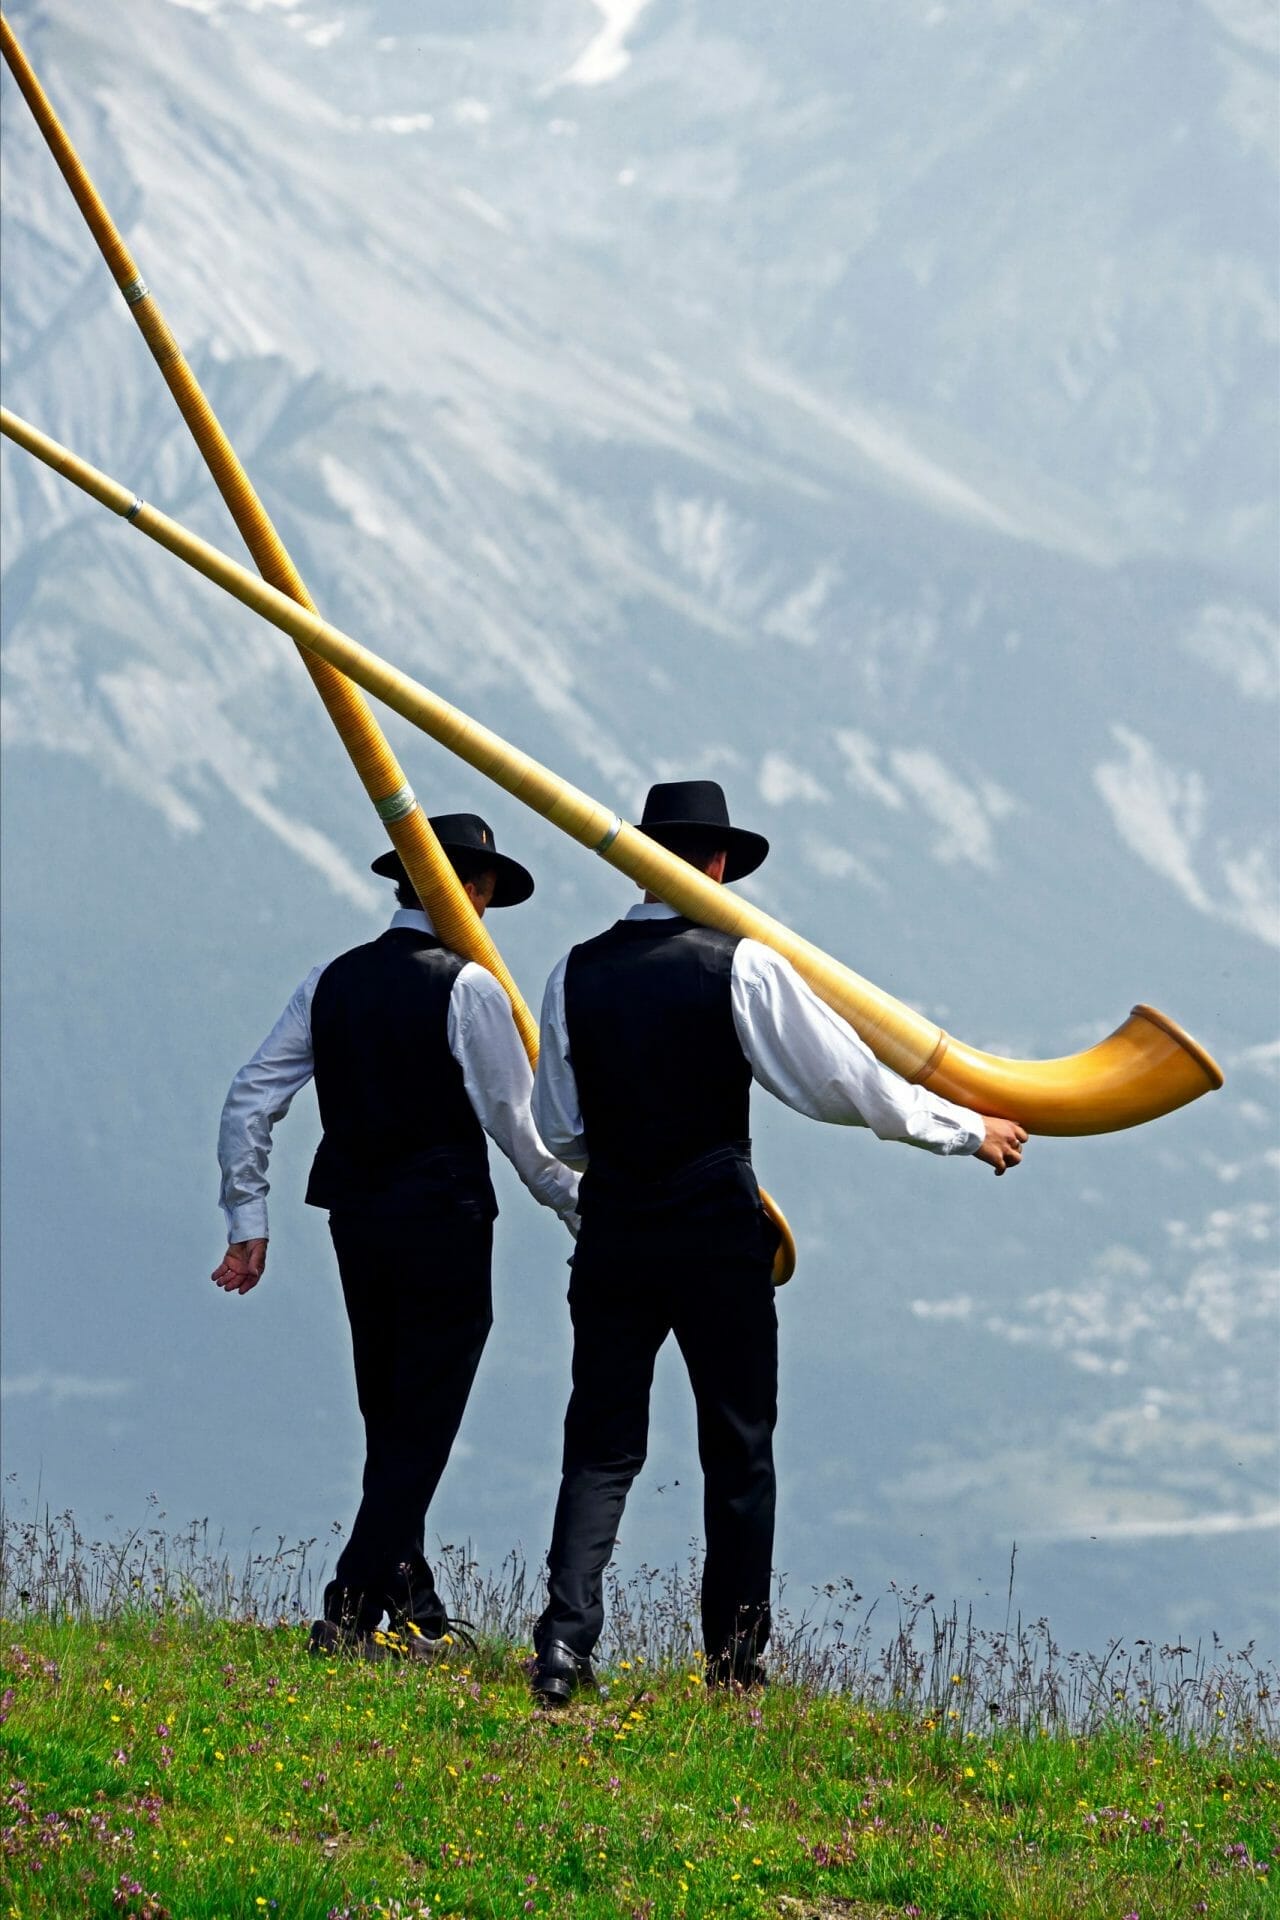 Festival Internacional Alphorn, Nendaz, cantón de Valais, Suiza, Europa